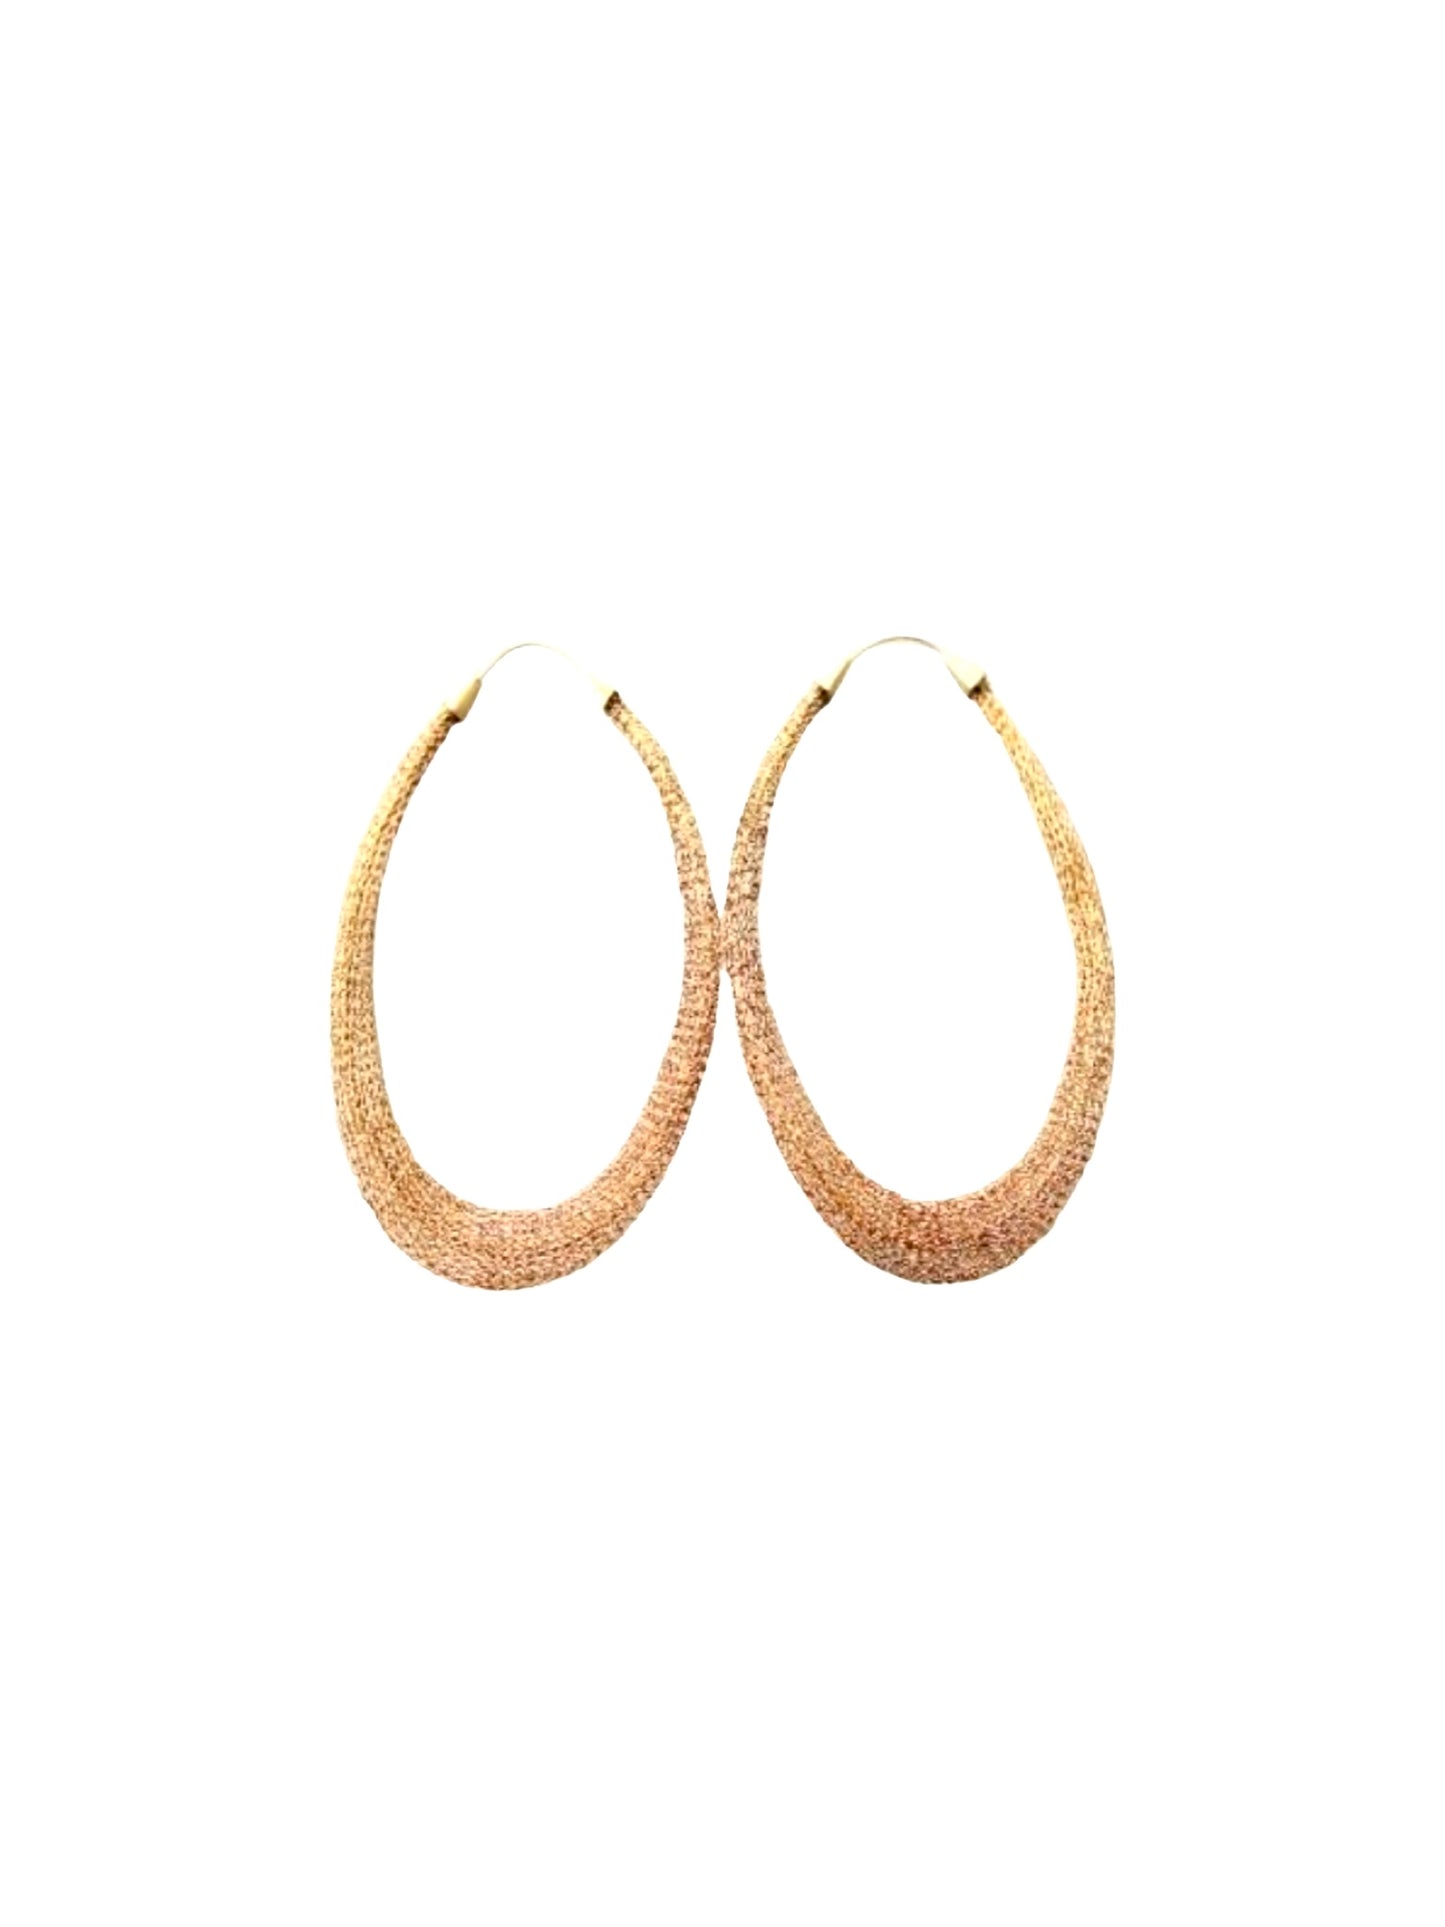 Milena Zu Large Oval Earrings